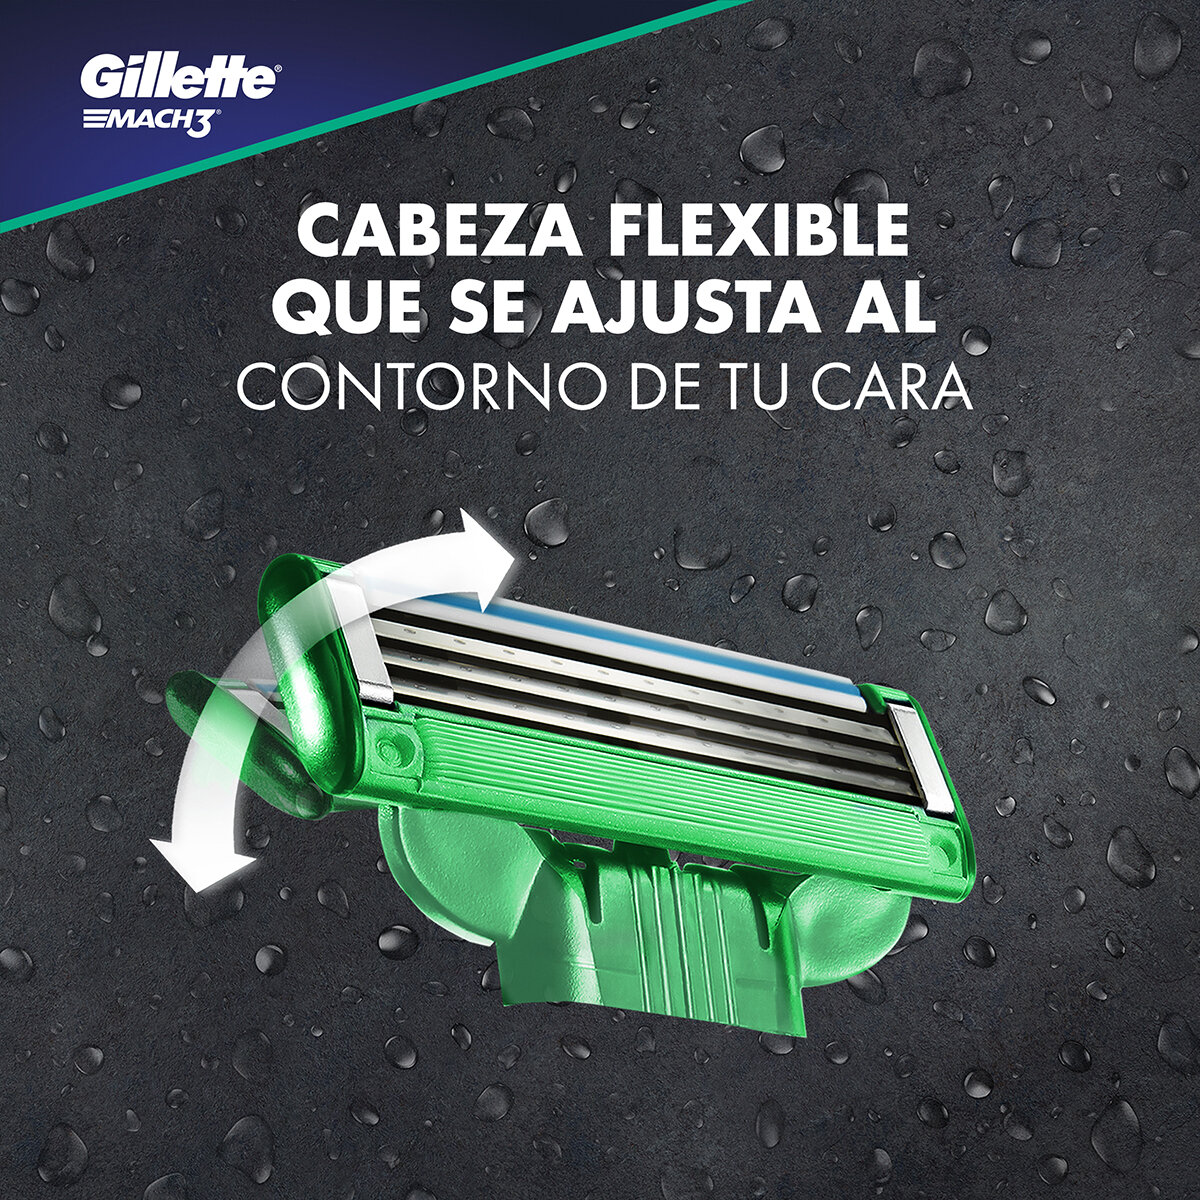 Gillette Repuestos Para Afeitar Mach3 Sensitive 20 pzas